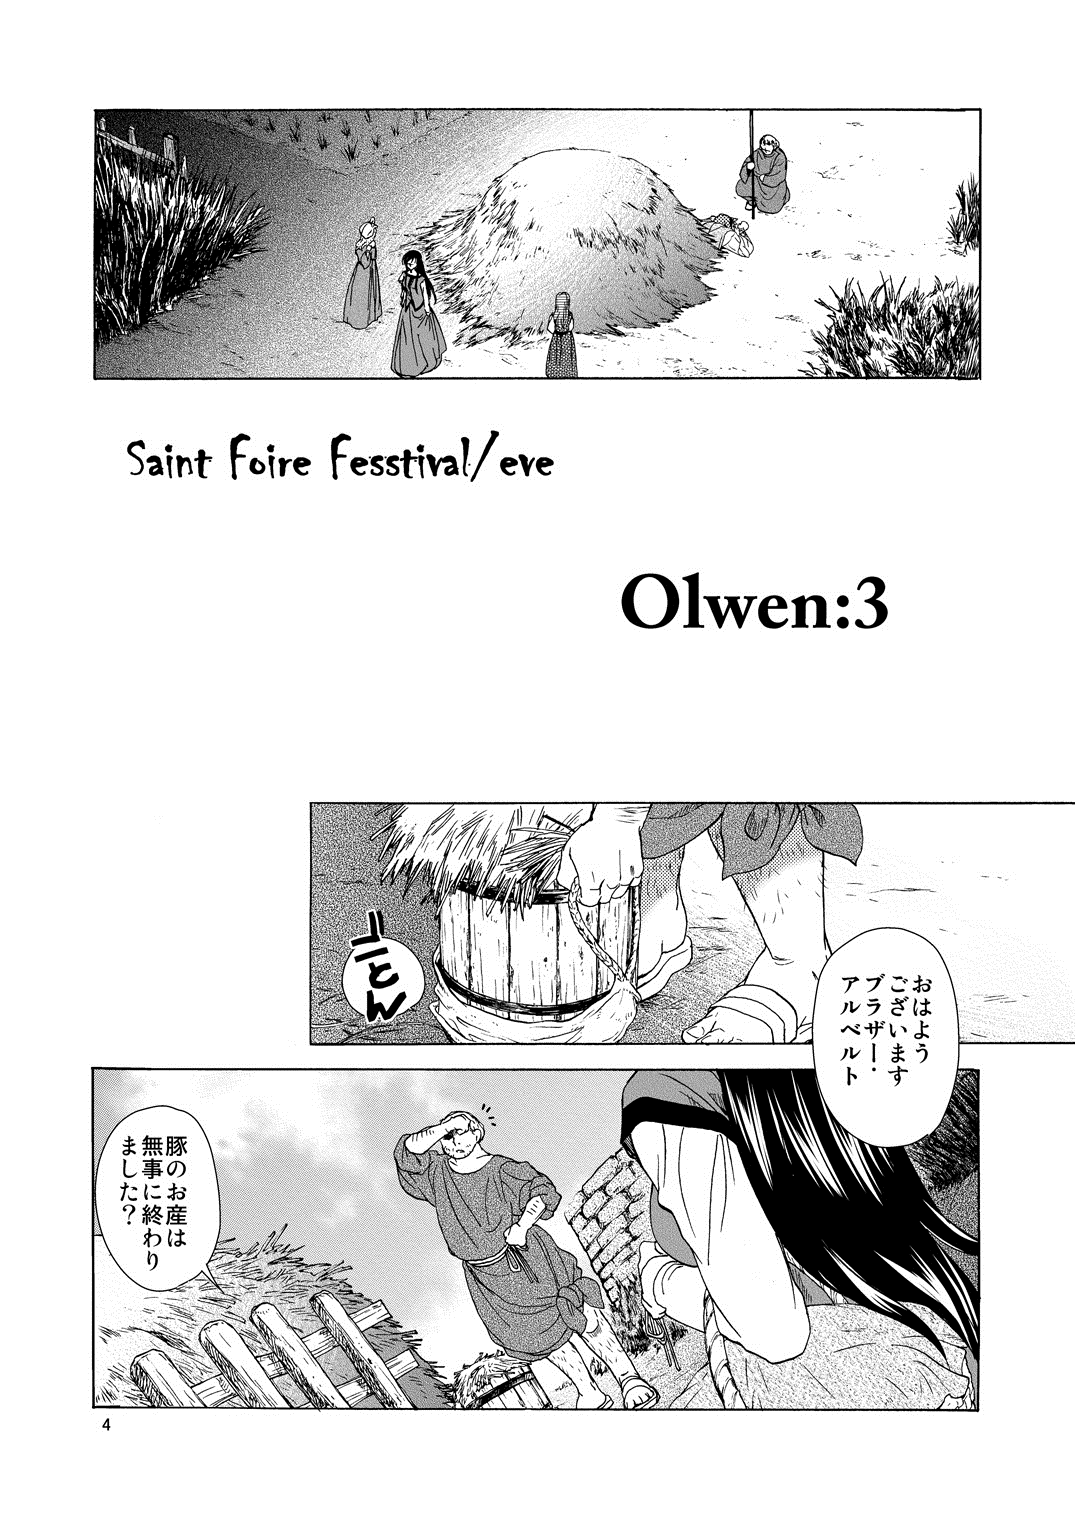 [床子屋 (HEIZO, 鬼頭えん)] Saint Foire Festival /eve Olwen:3 [DL版]